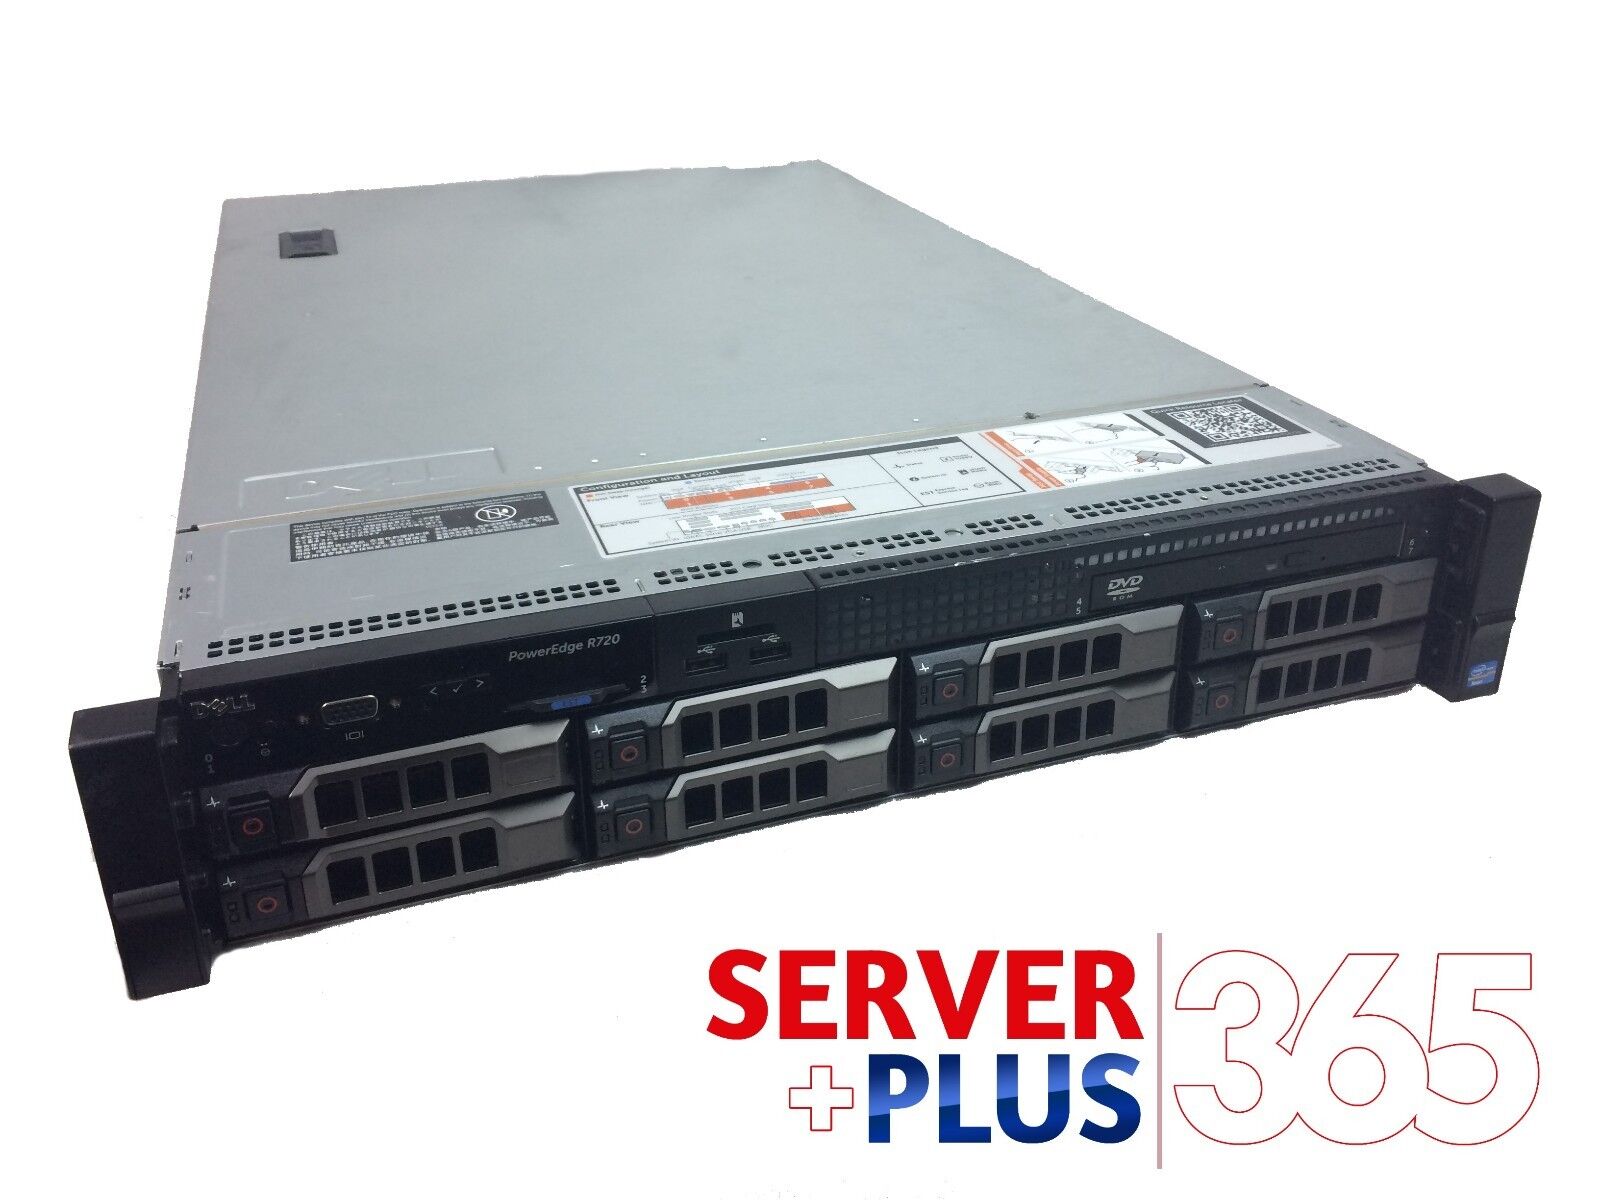 Dell PowerEdge R720 3.5 Server, 2x E5-2660V2 2.2GHz 10Core, 64GB, 8x Tray, H710